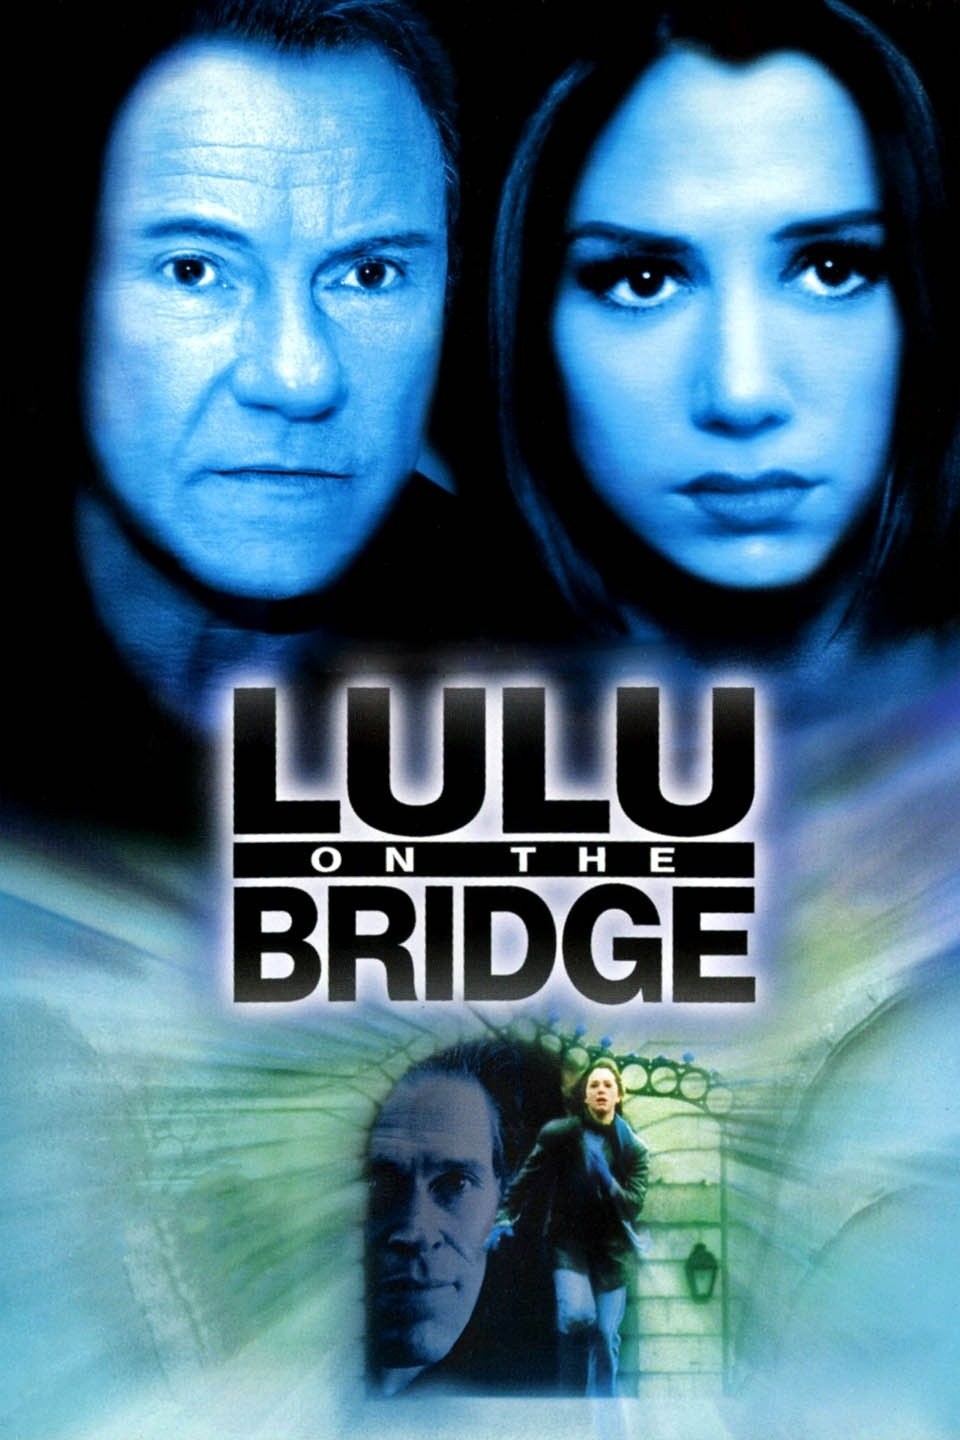 Lulu on the Bridge - Rotten Tomatoes